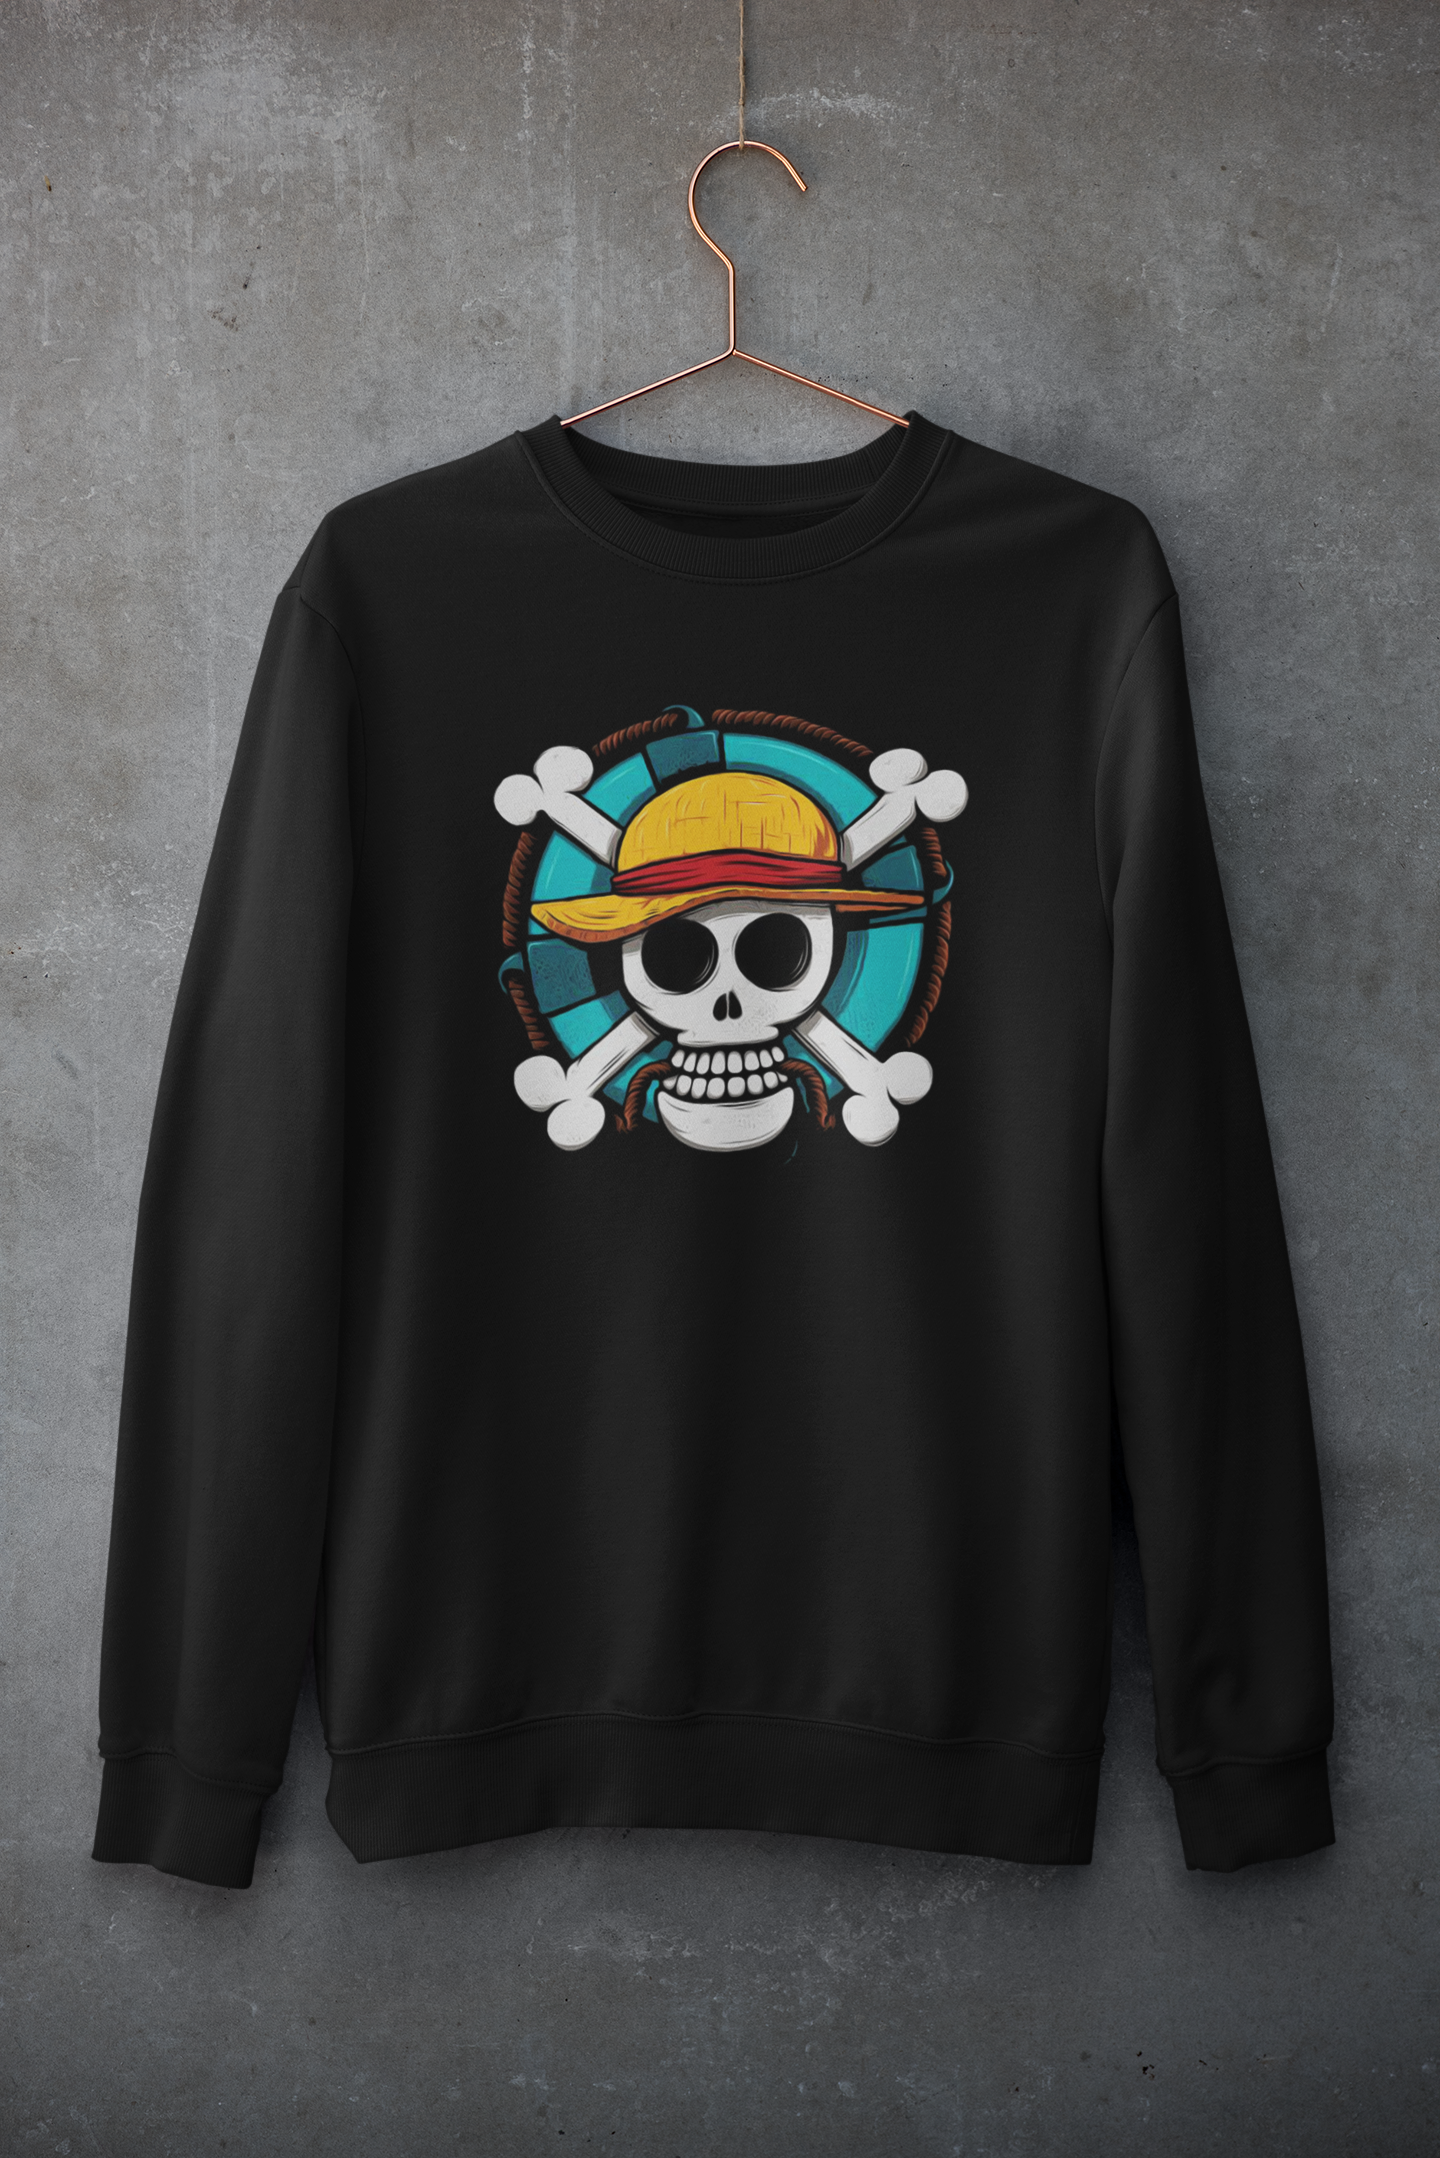 Straw Hat Pirate : Monkey D Luffy- One Piece - Winter Sweatshirts BLACK